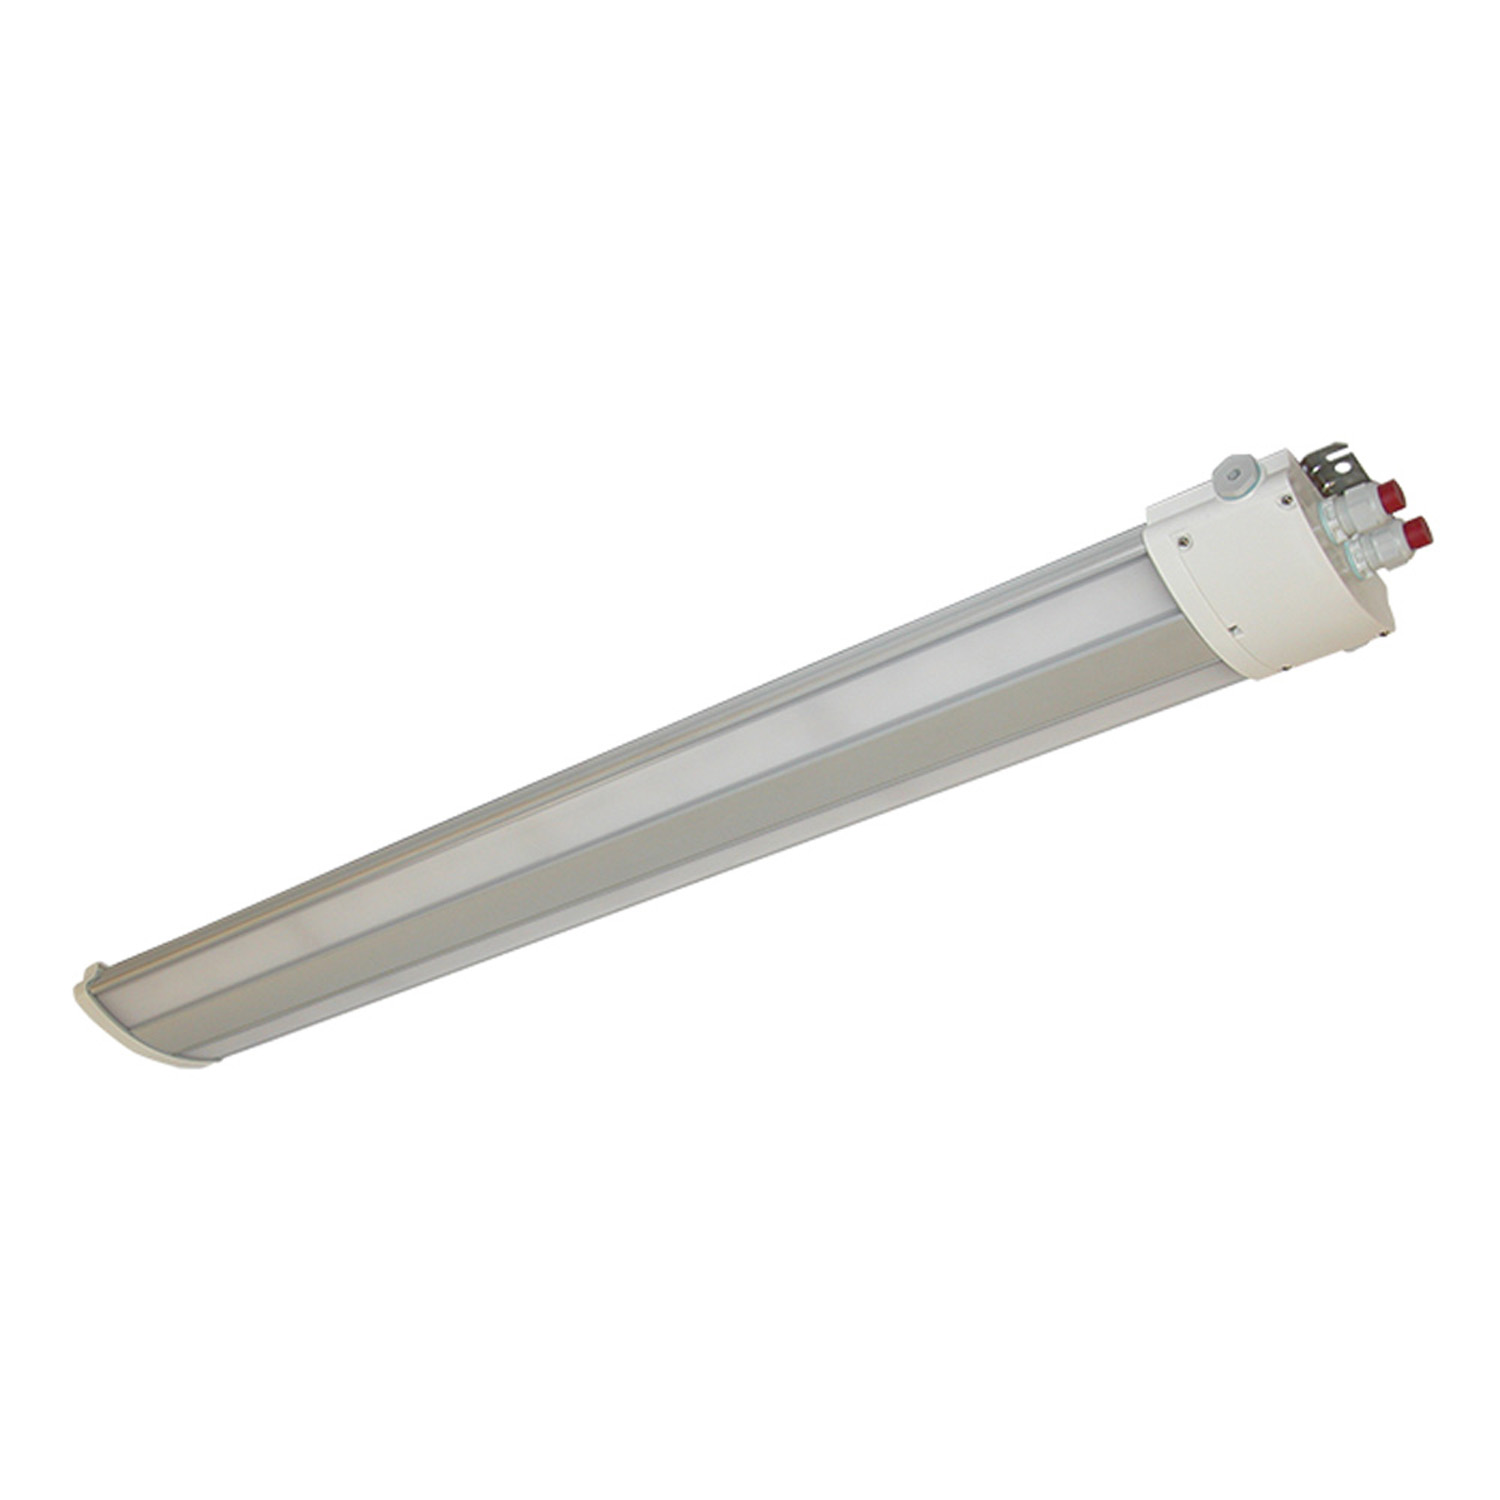 TL60704002 Watertight LED luminaire, 2X20W / 4500lm 840 110-240VAC, M25 GL